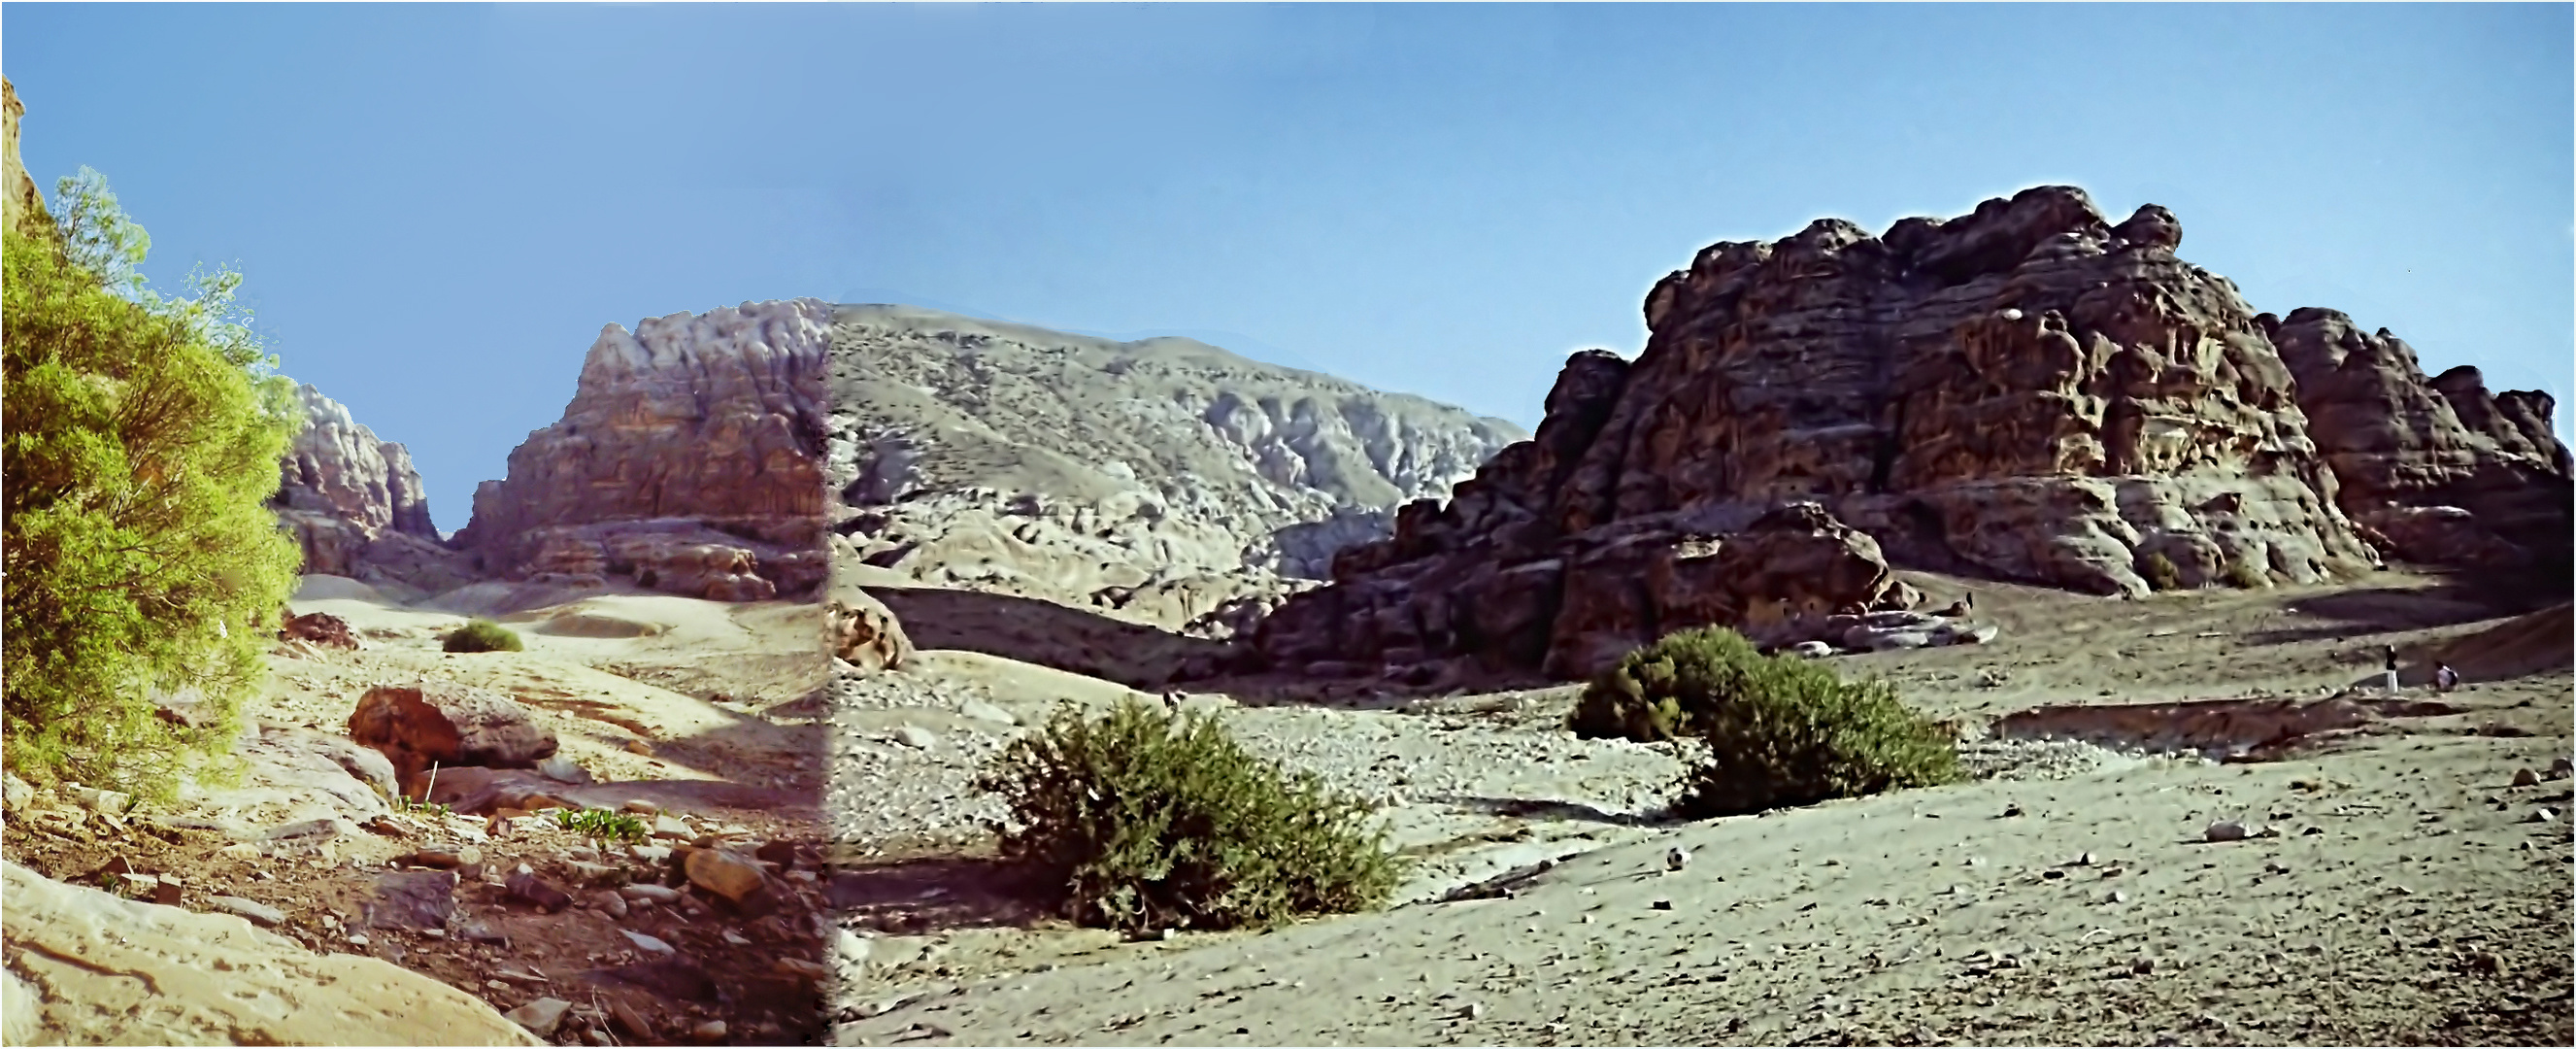 Dans les vallées près de Petra